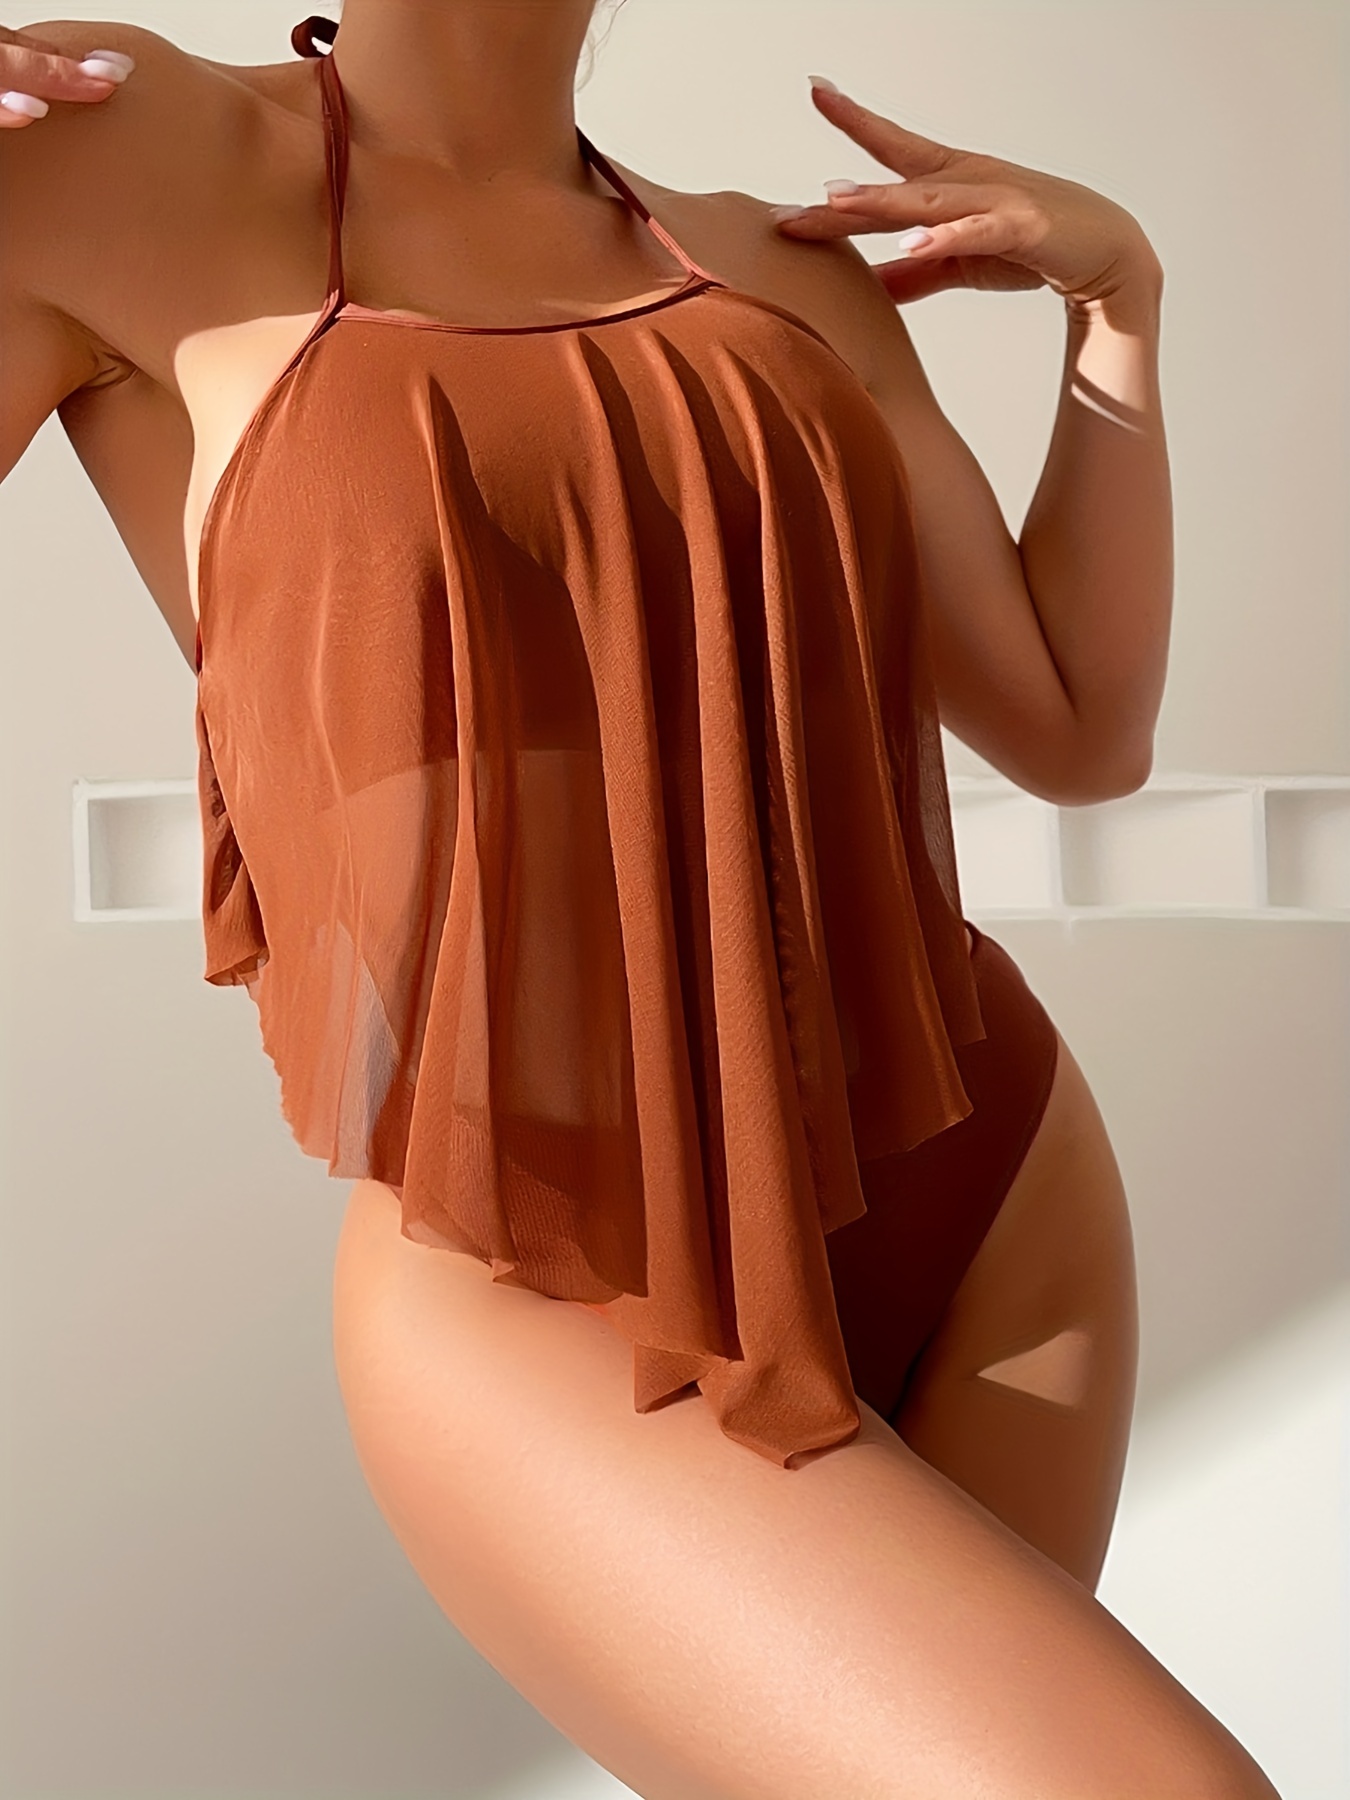 Sheer Mesh Bikini Set Triangle Bra & High Cut Bottom & Ruffle Trim Cover Up  Pants 3 Piece Bathing Suit